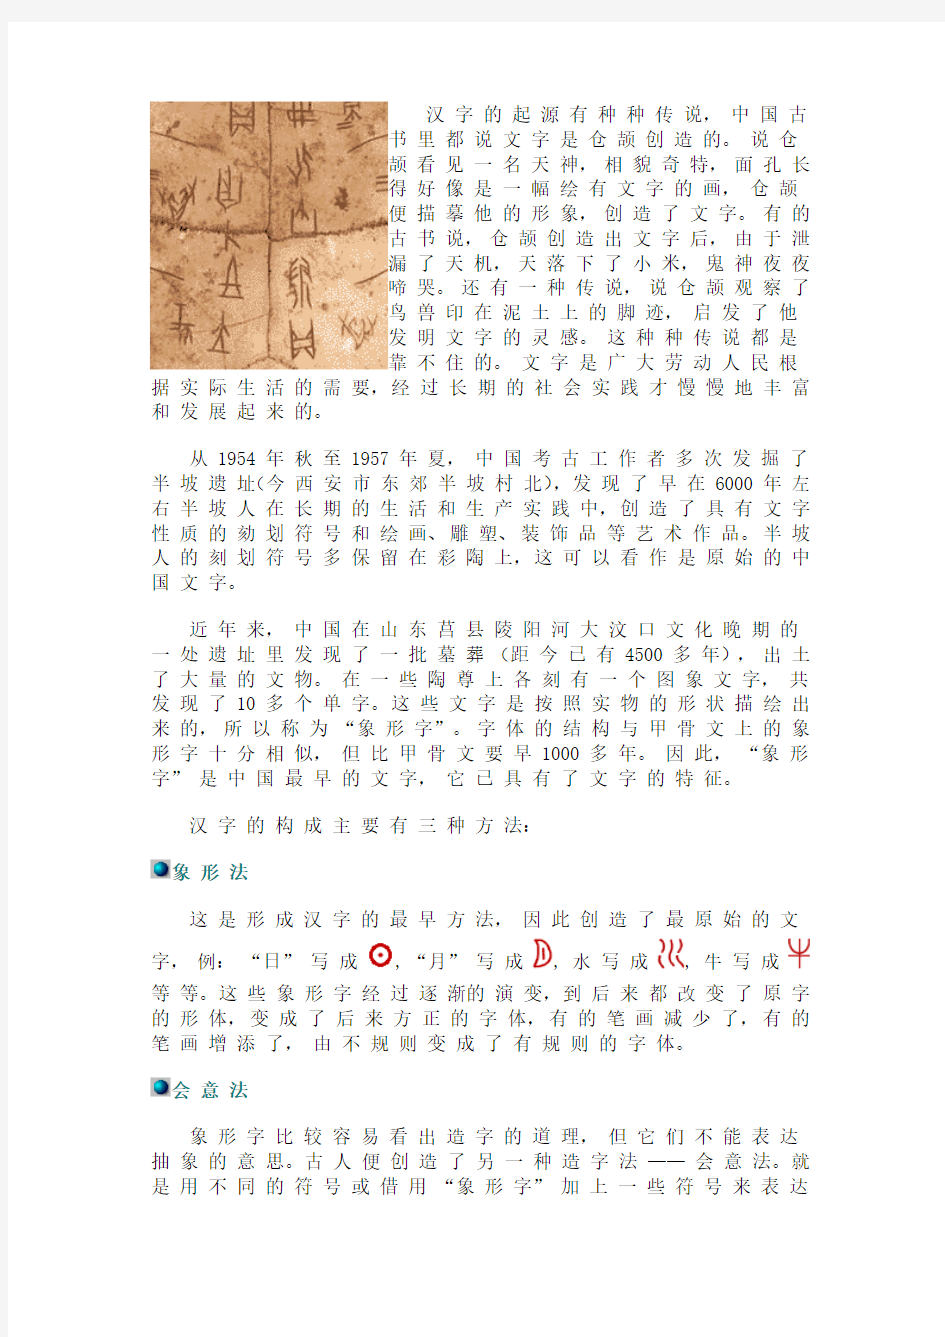 汉 字 的 起 源 有 种 种 传 说